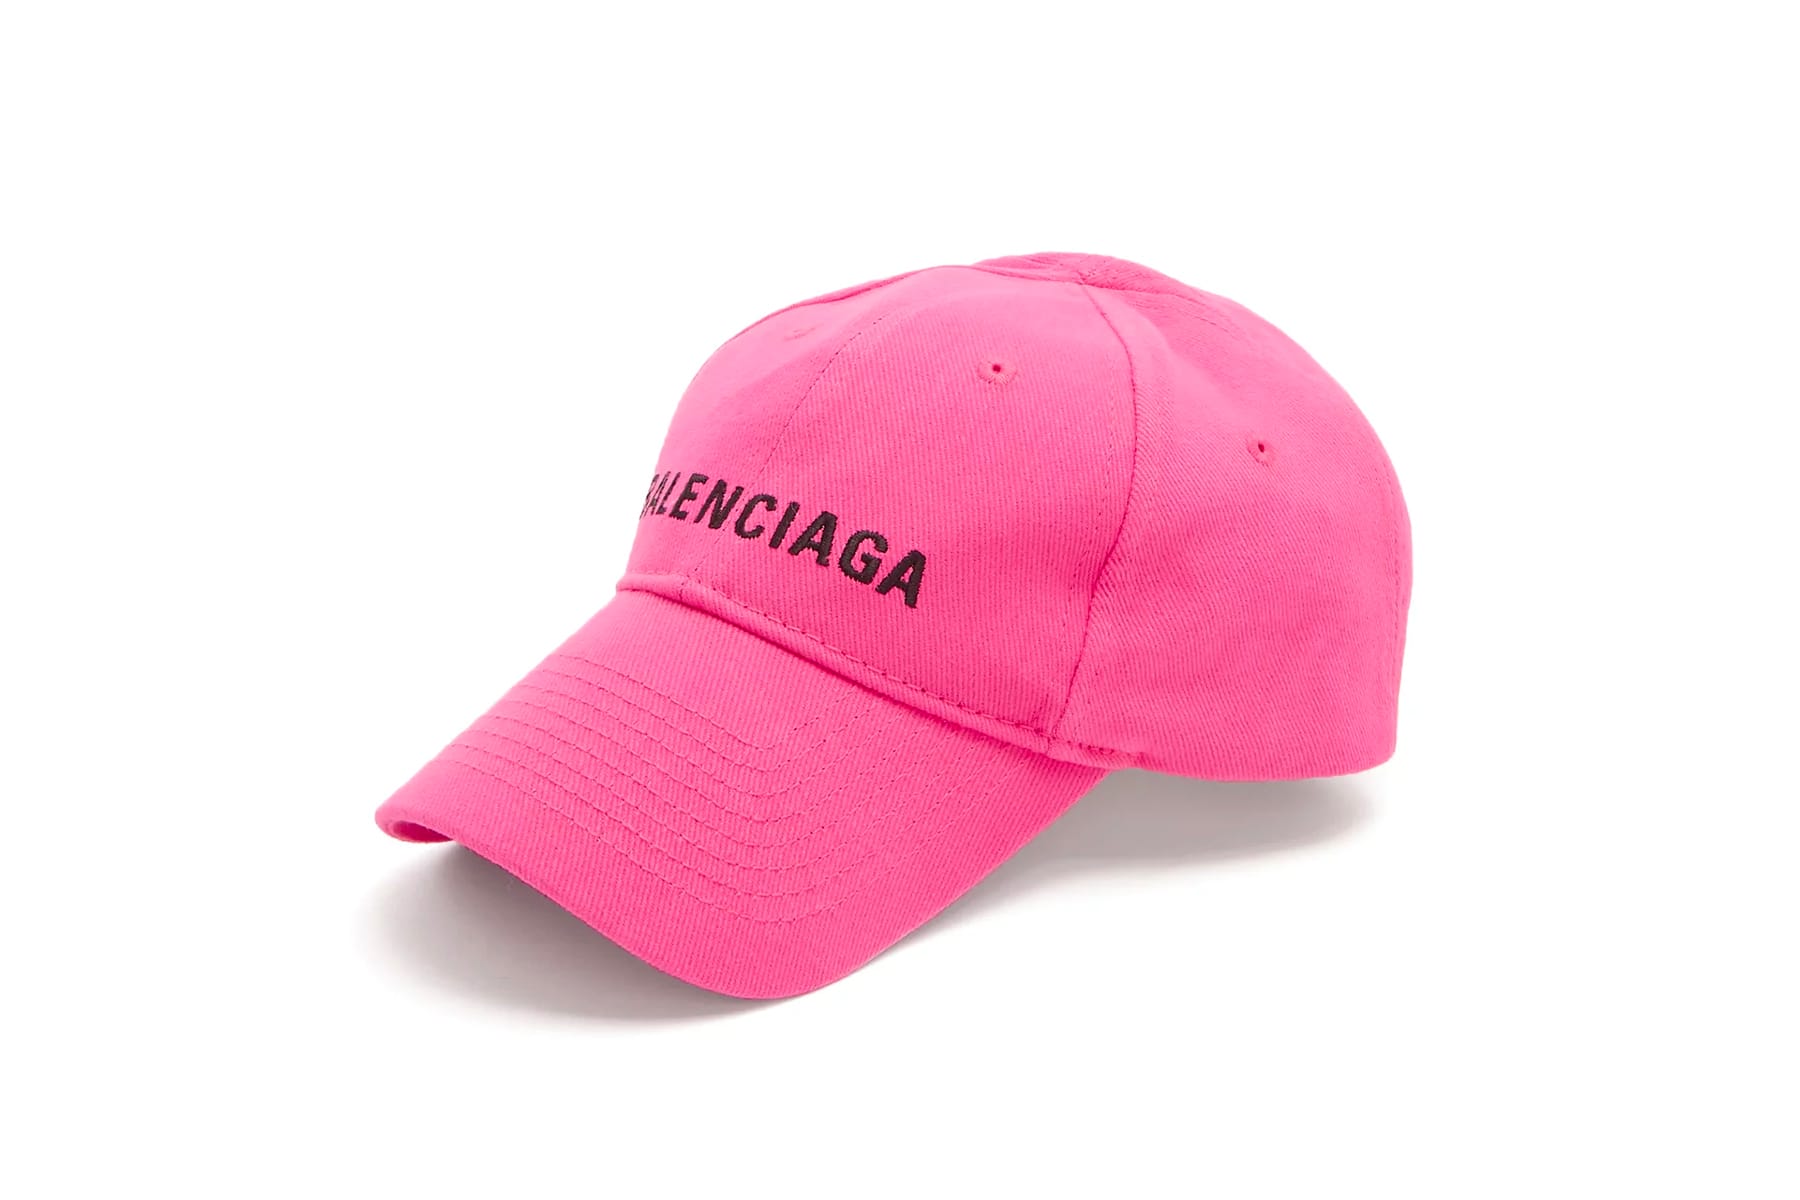 balenciaga hat pink